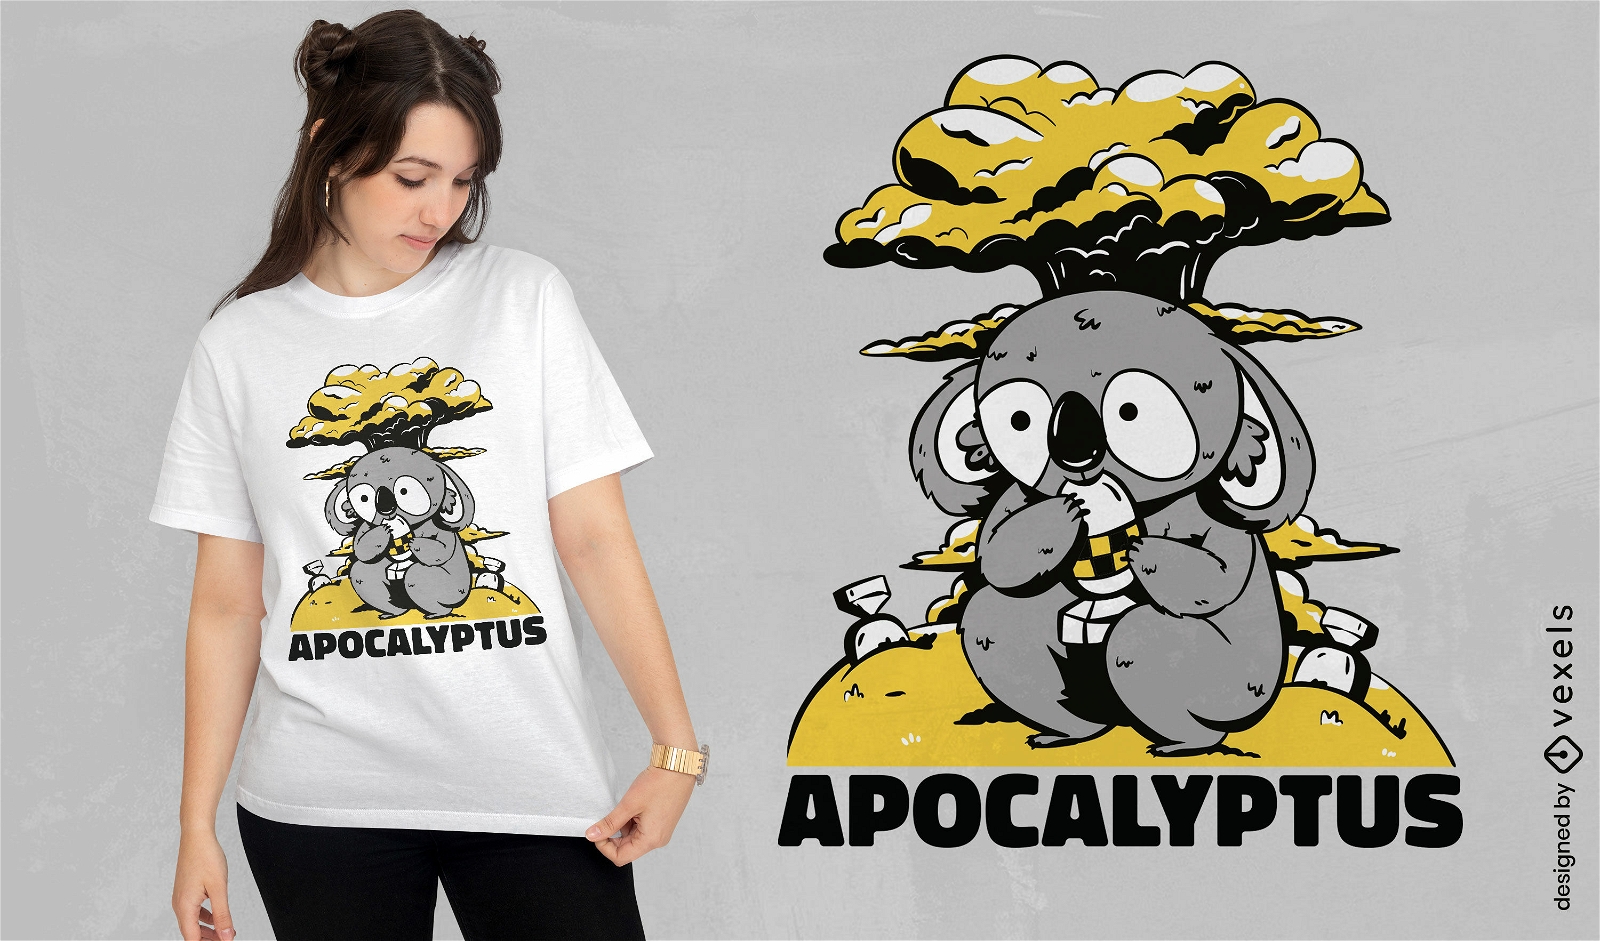 Nuclear koala t-shirt design